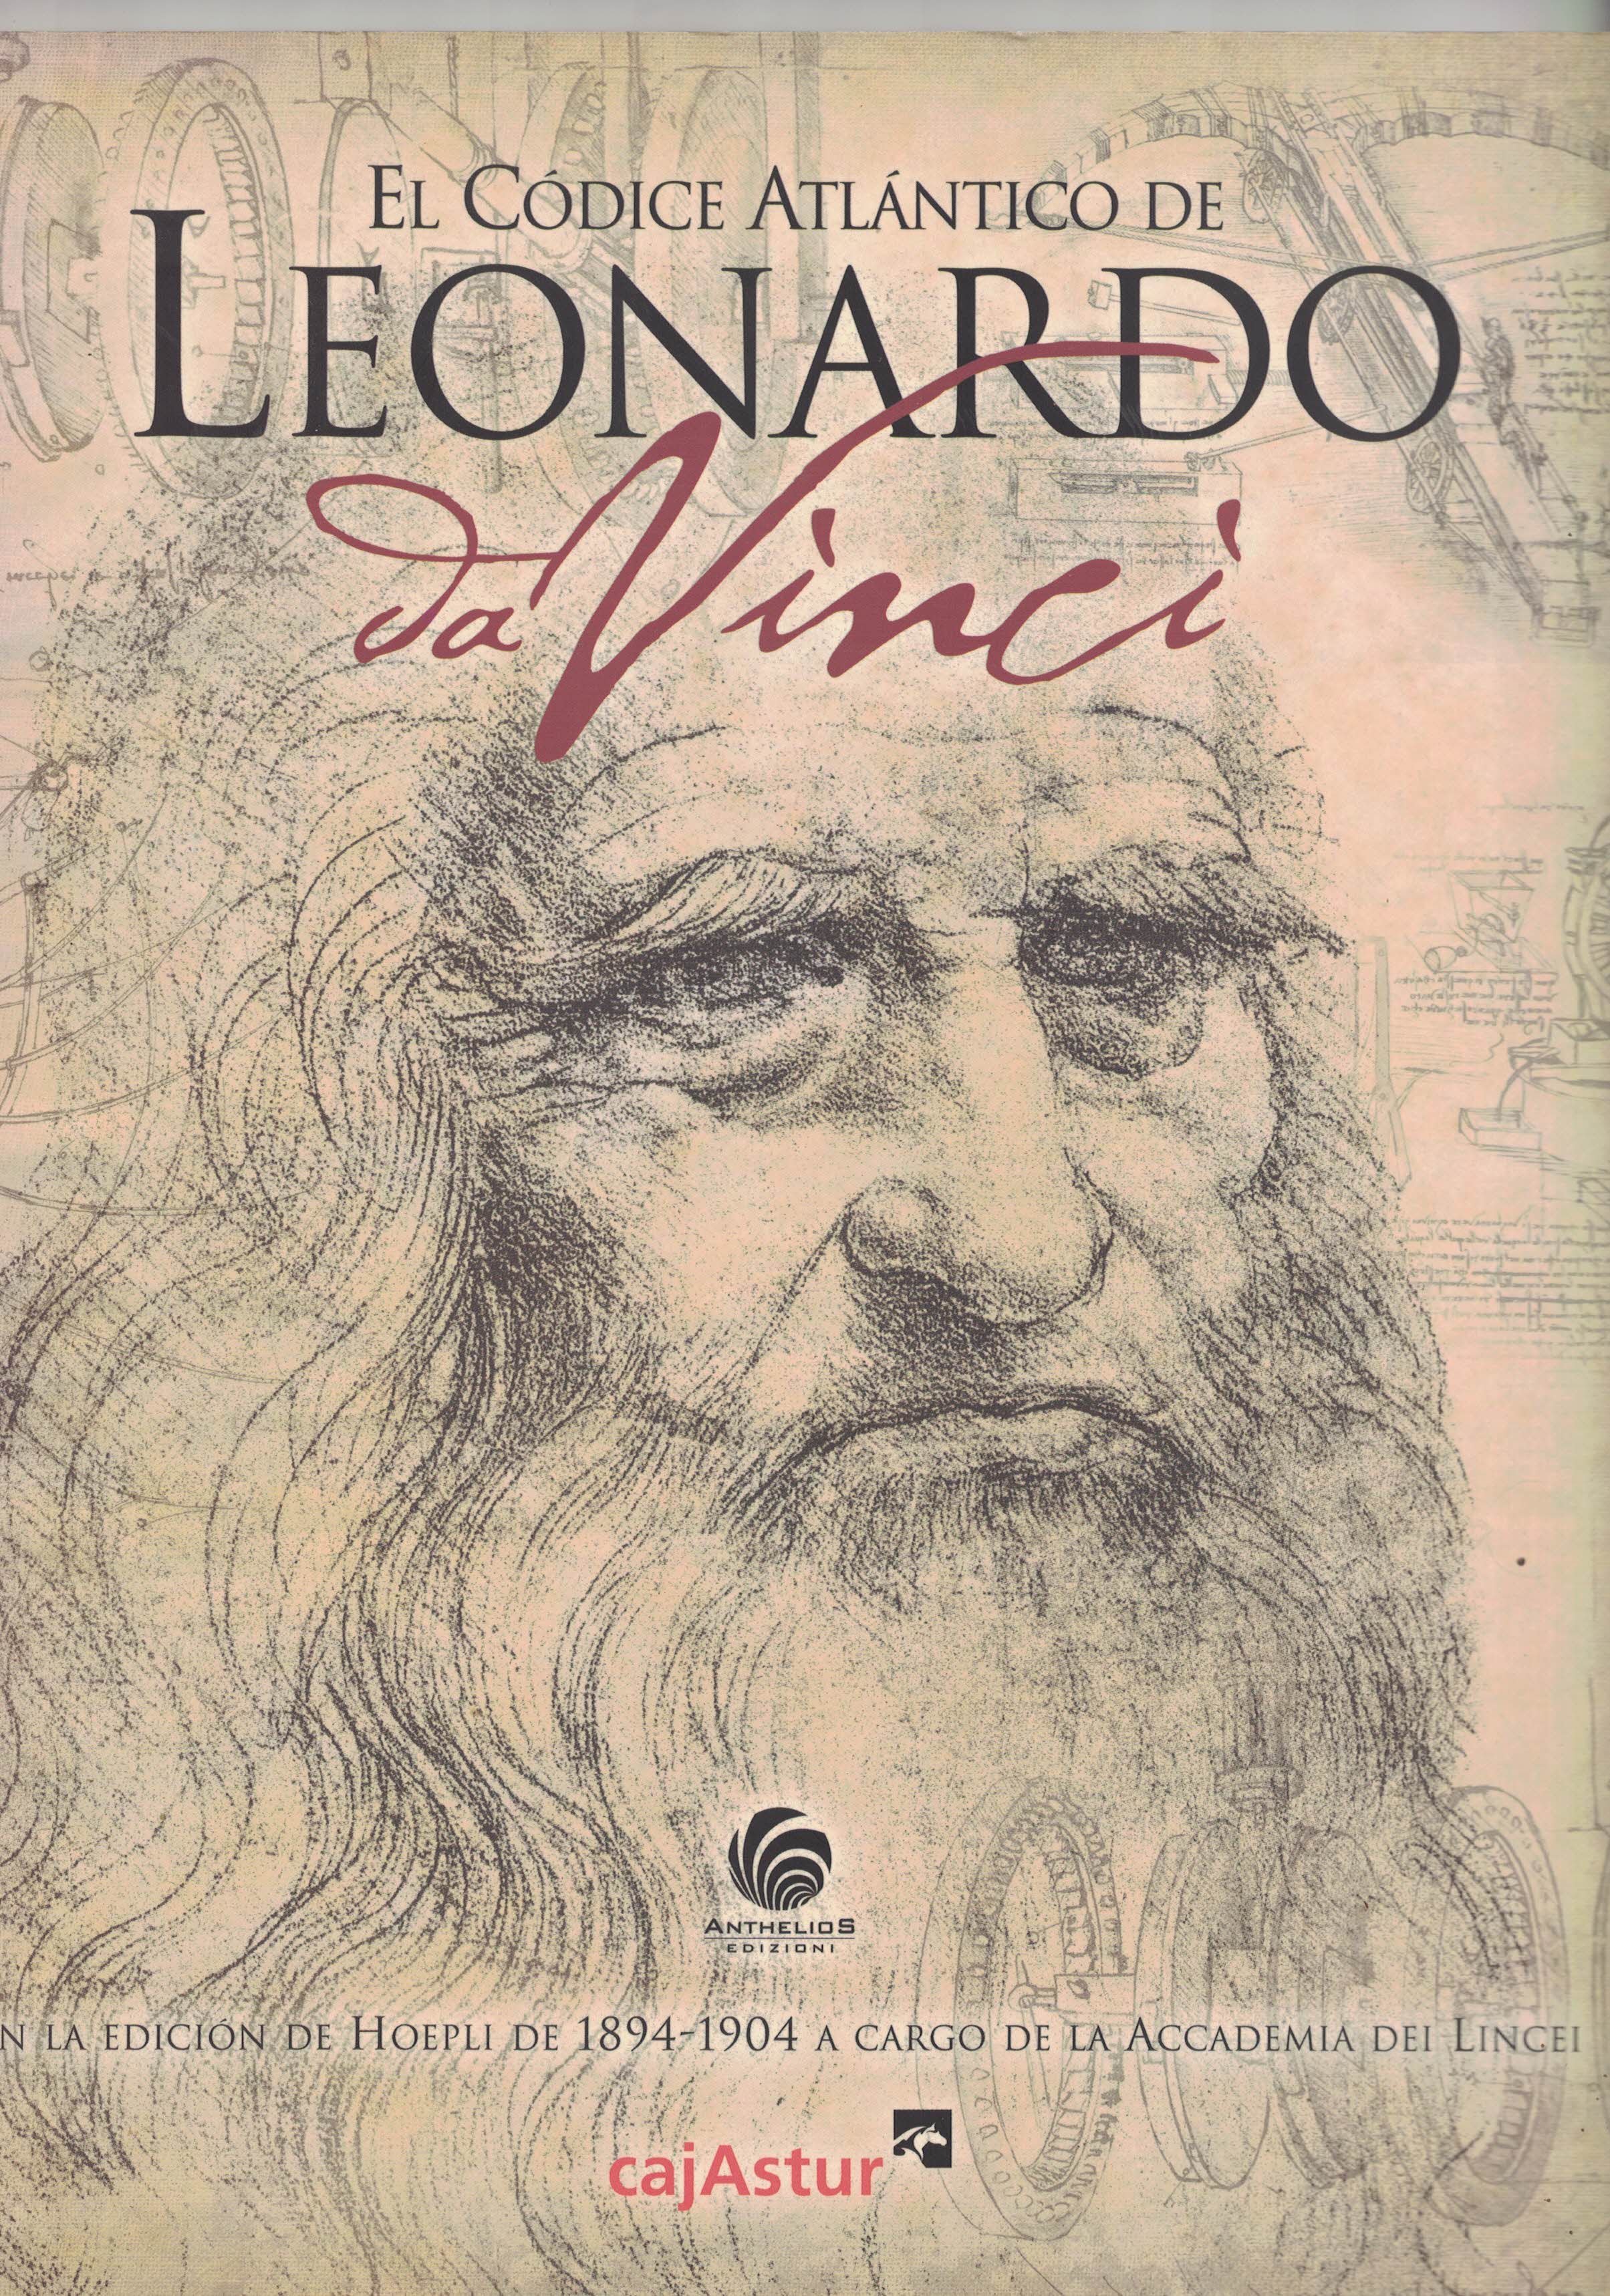 El Códice Atlántico de Leonardo da Vinci en la edición de Hoepli de 1894-1904 a cargo de la Accademia del Lincei